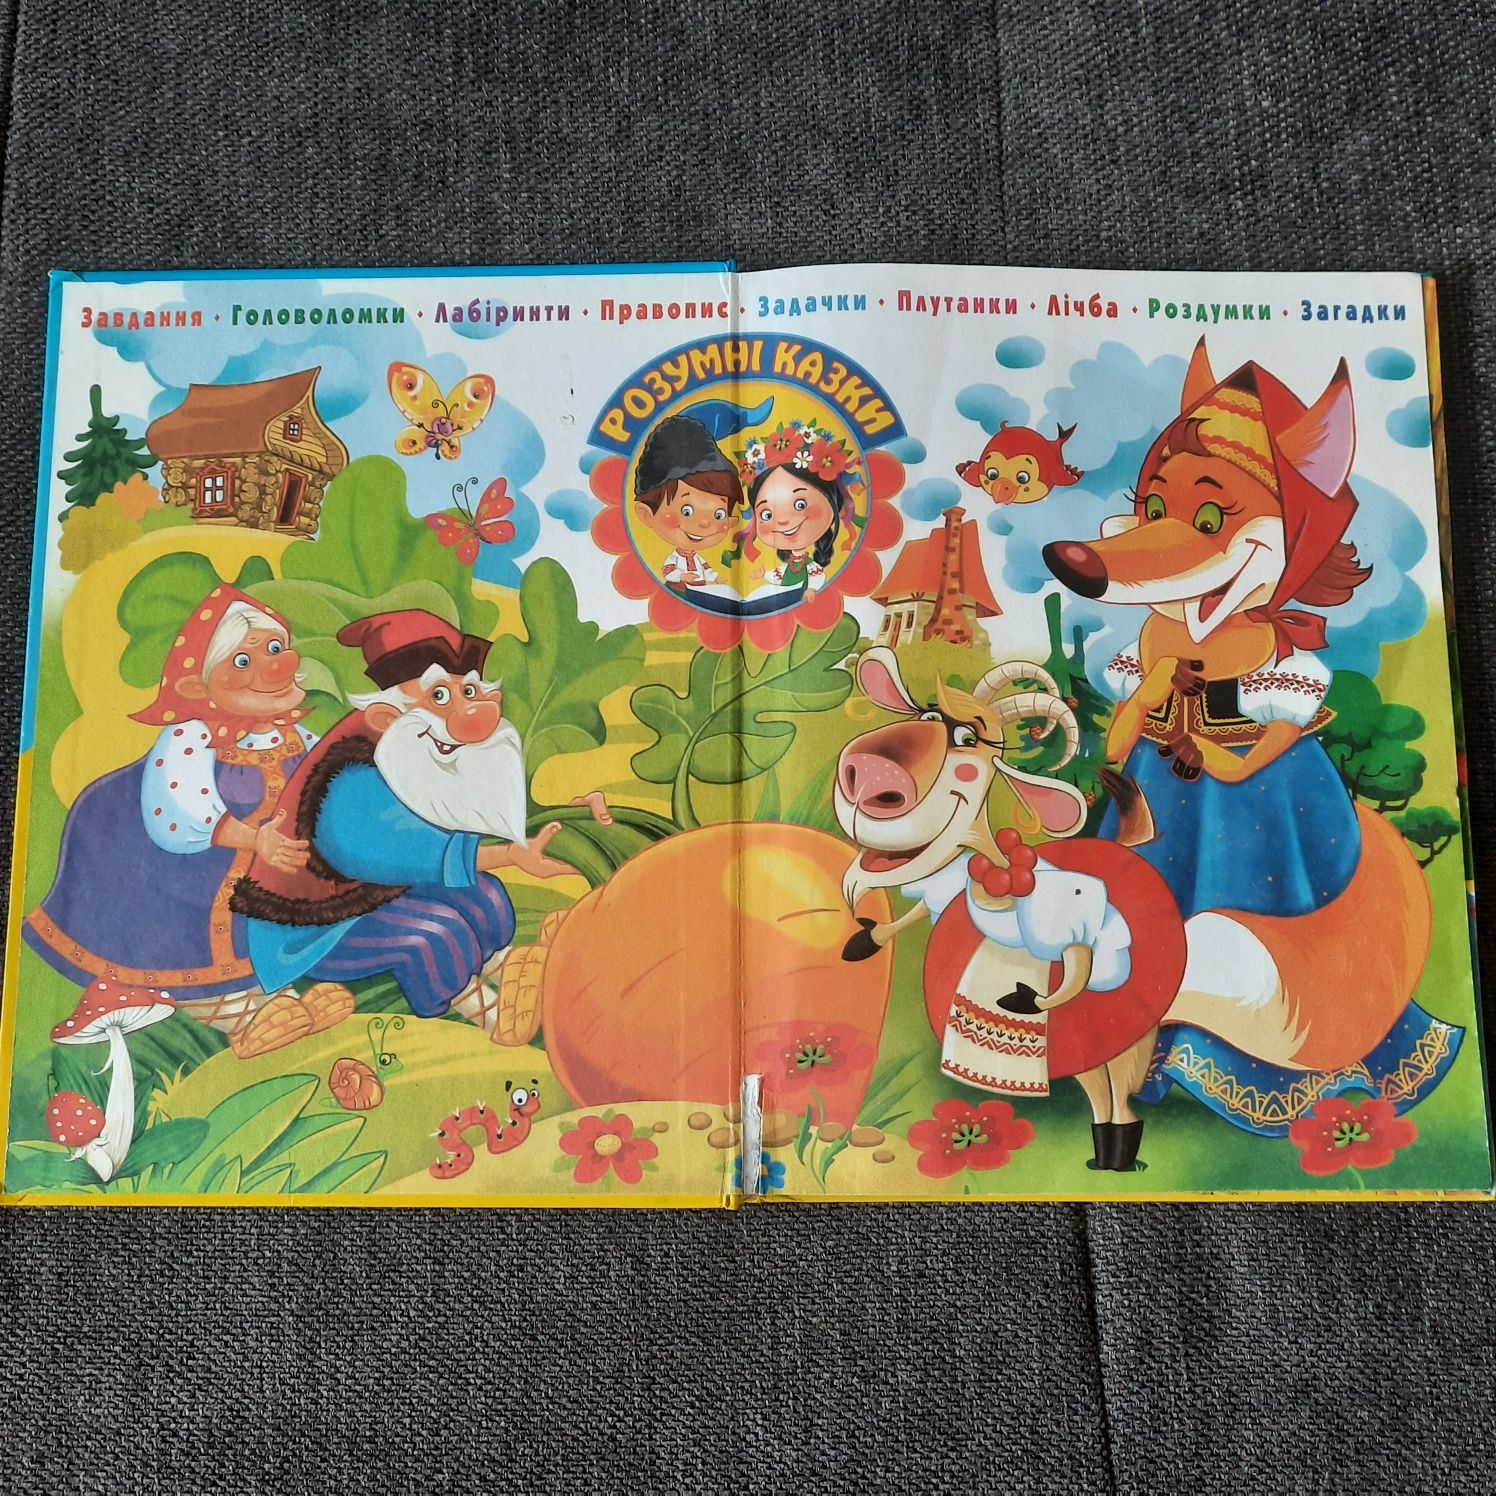 Дитяча книга "Про козу-дерезу". Ріпка. Три ведмеді. Розумні казки. Кри